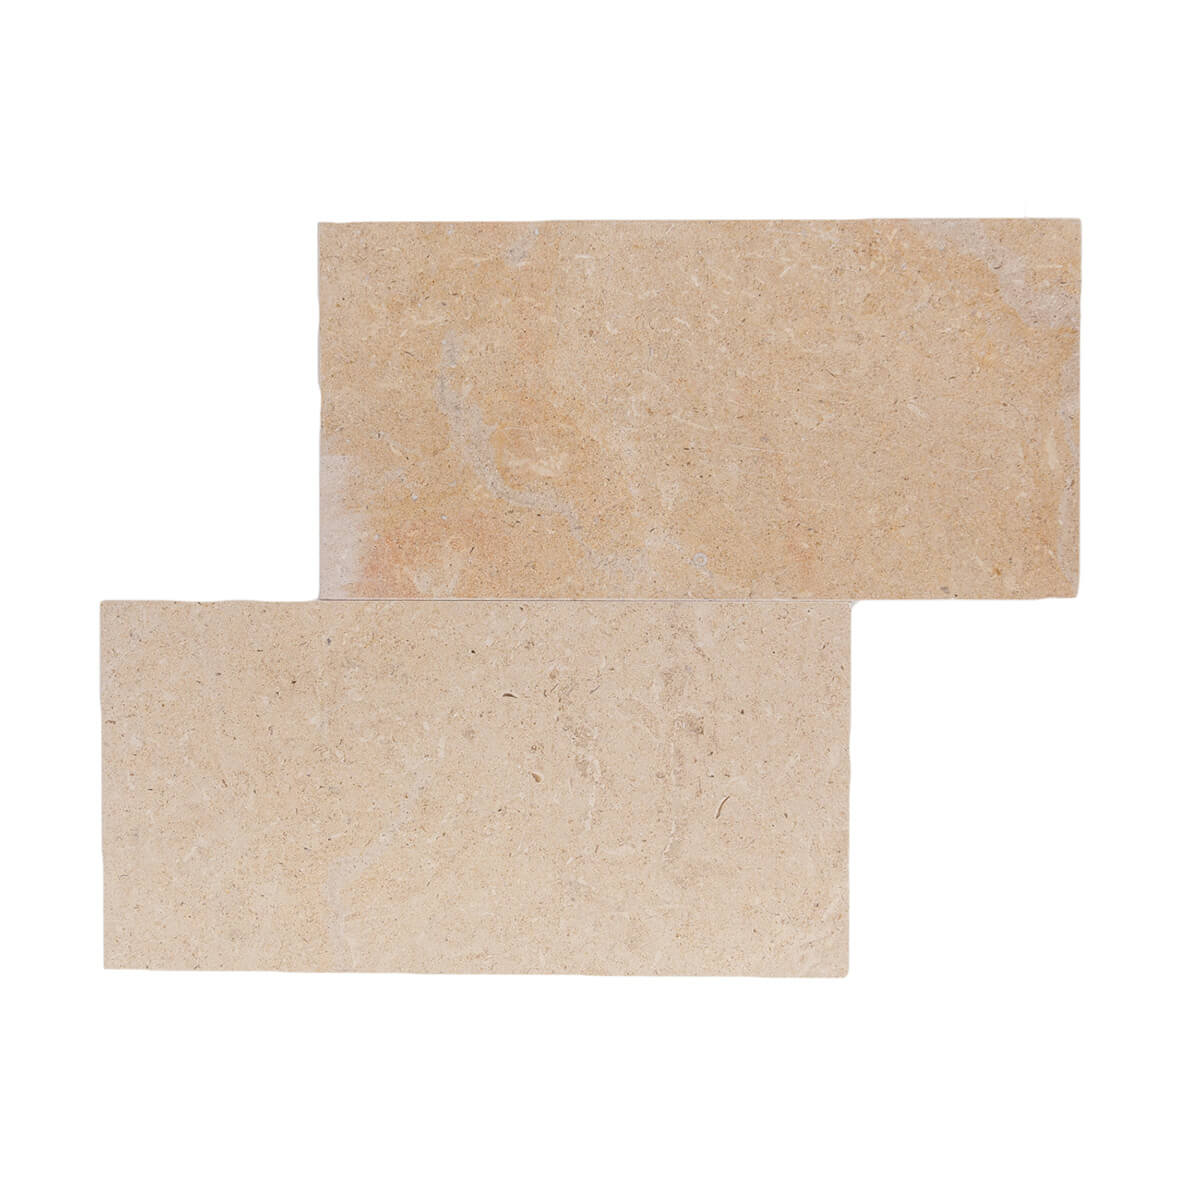 Corton Beige Limestone Field Tile - 6x12x0.375 inches